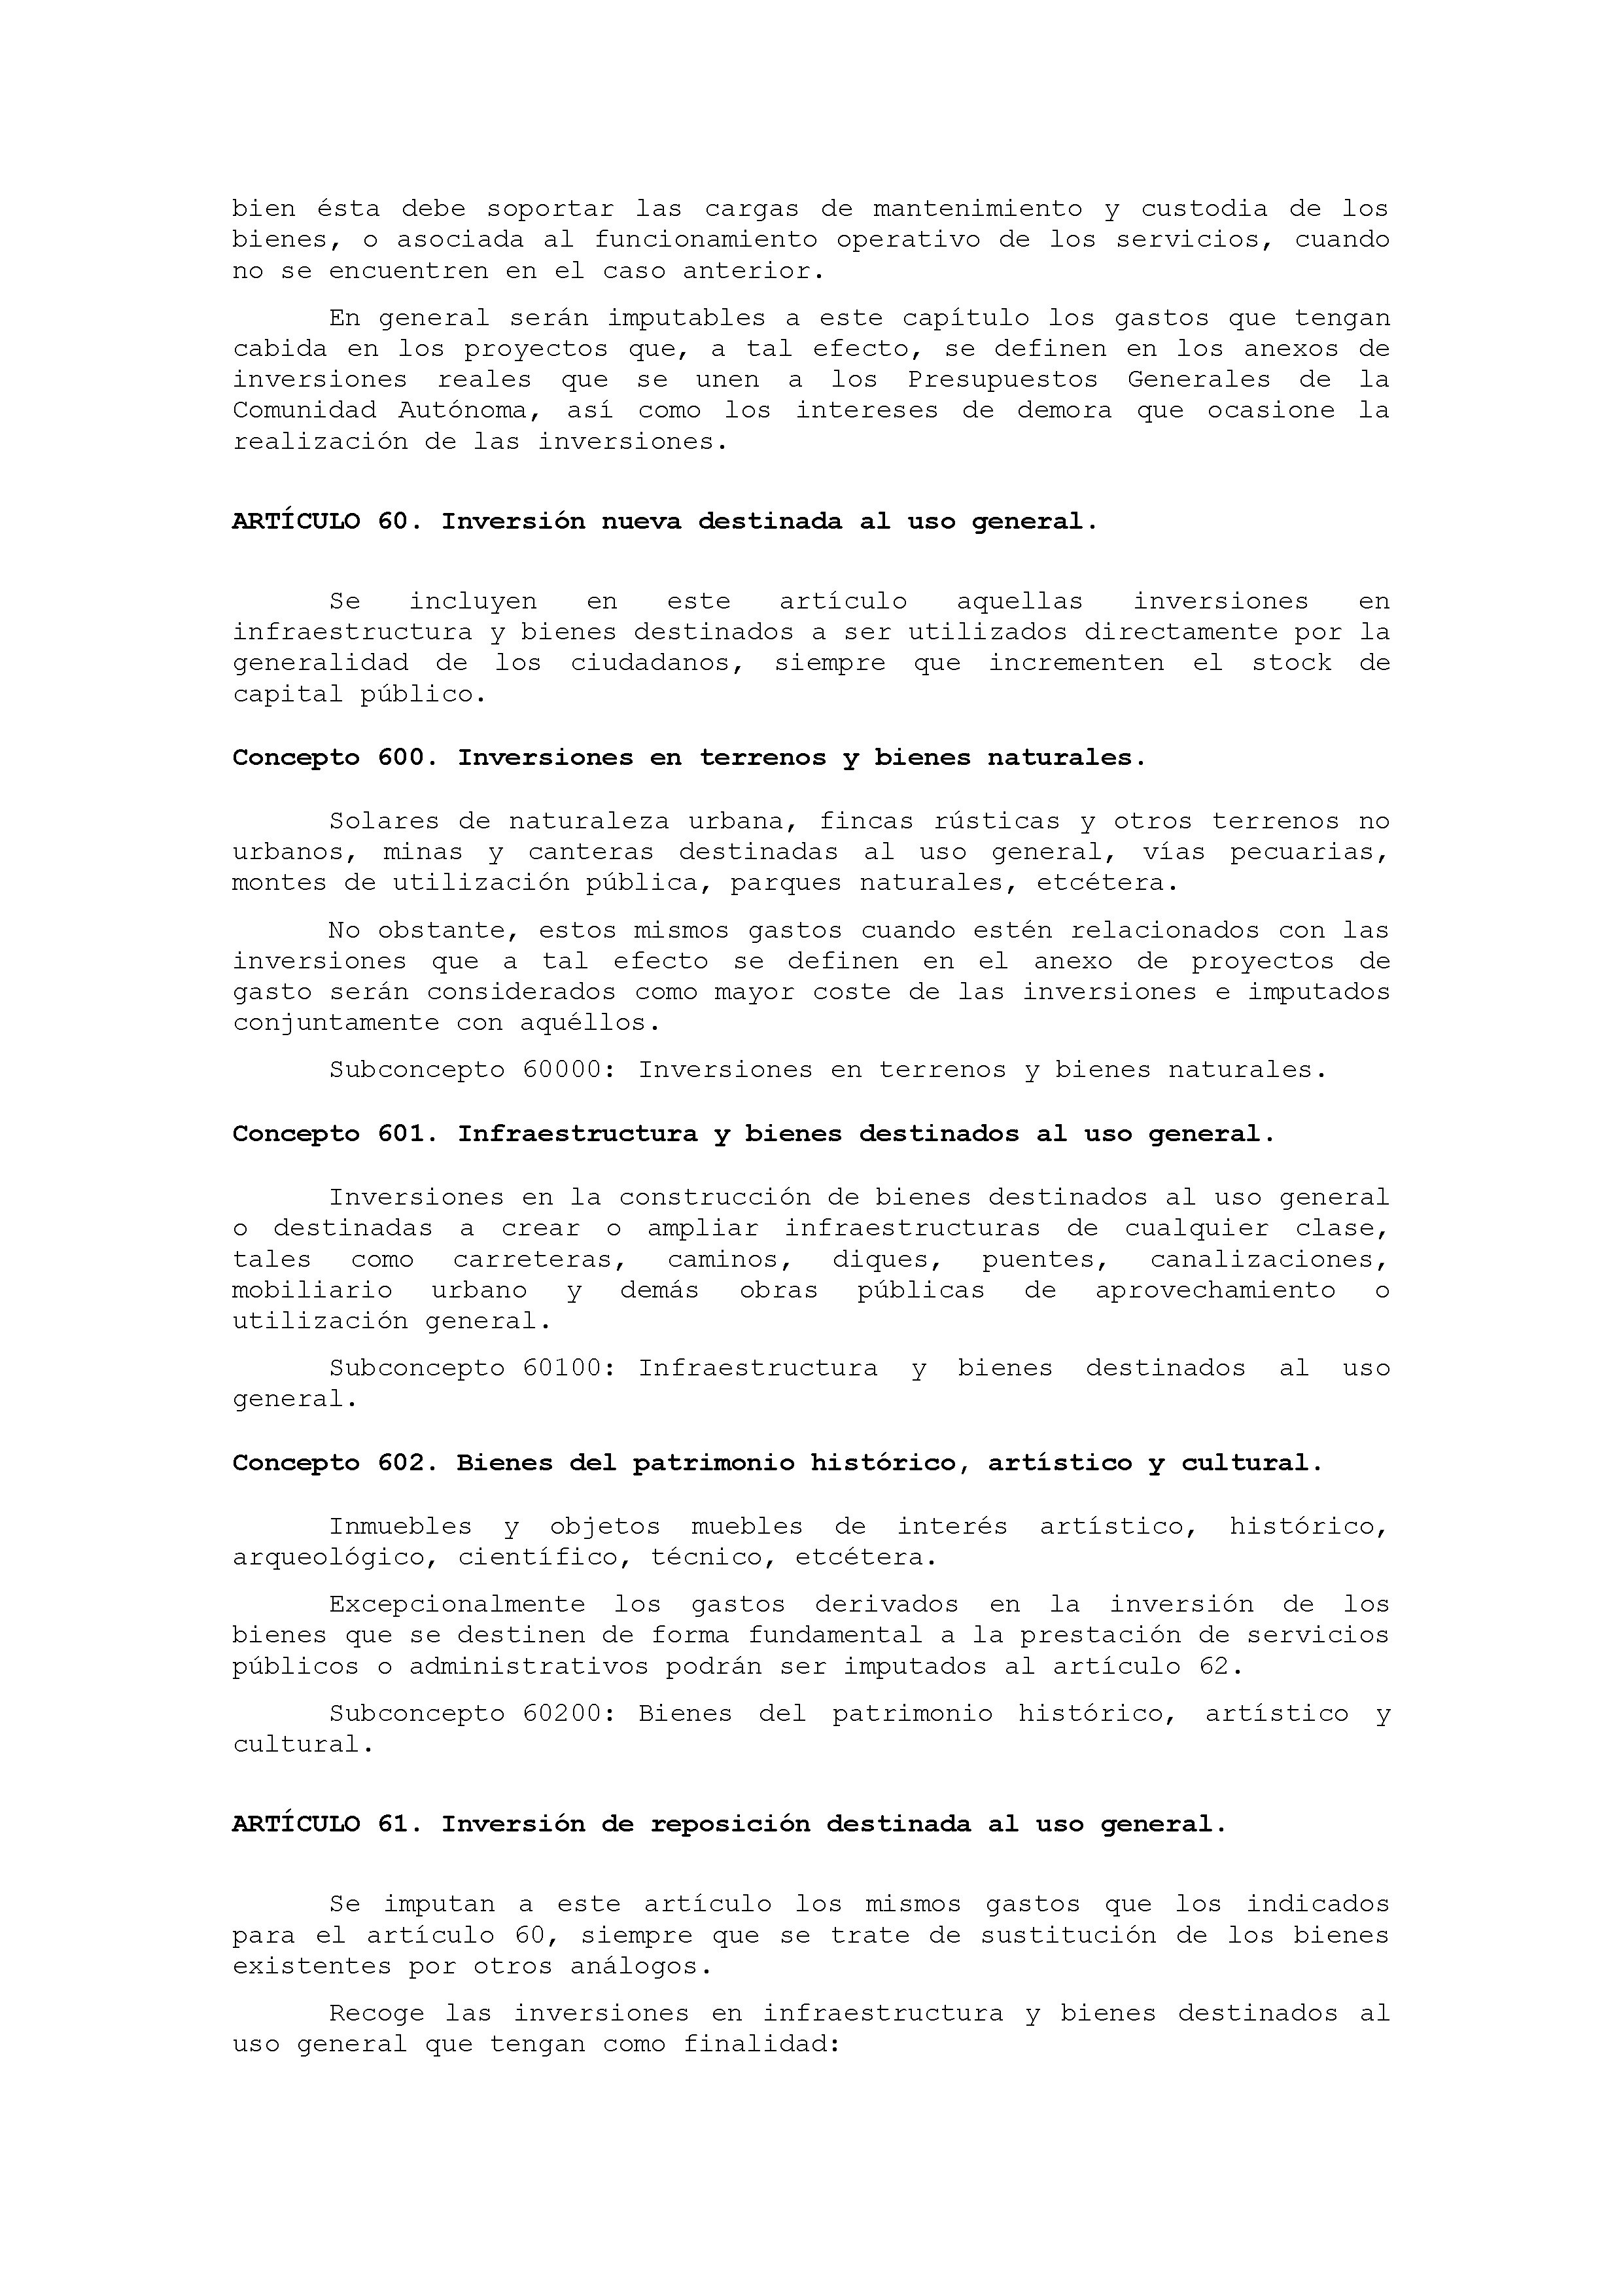 ANEXO IX CÓDIGO DE LA CLASIFICACIÓN ECONÓMICA DE LOS GASTOS PÚBLICOS Pag 35